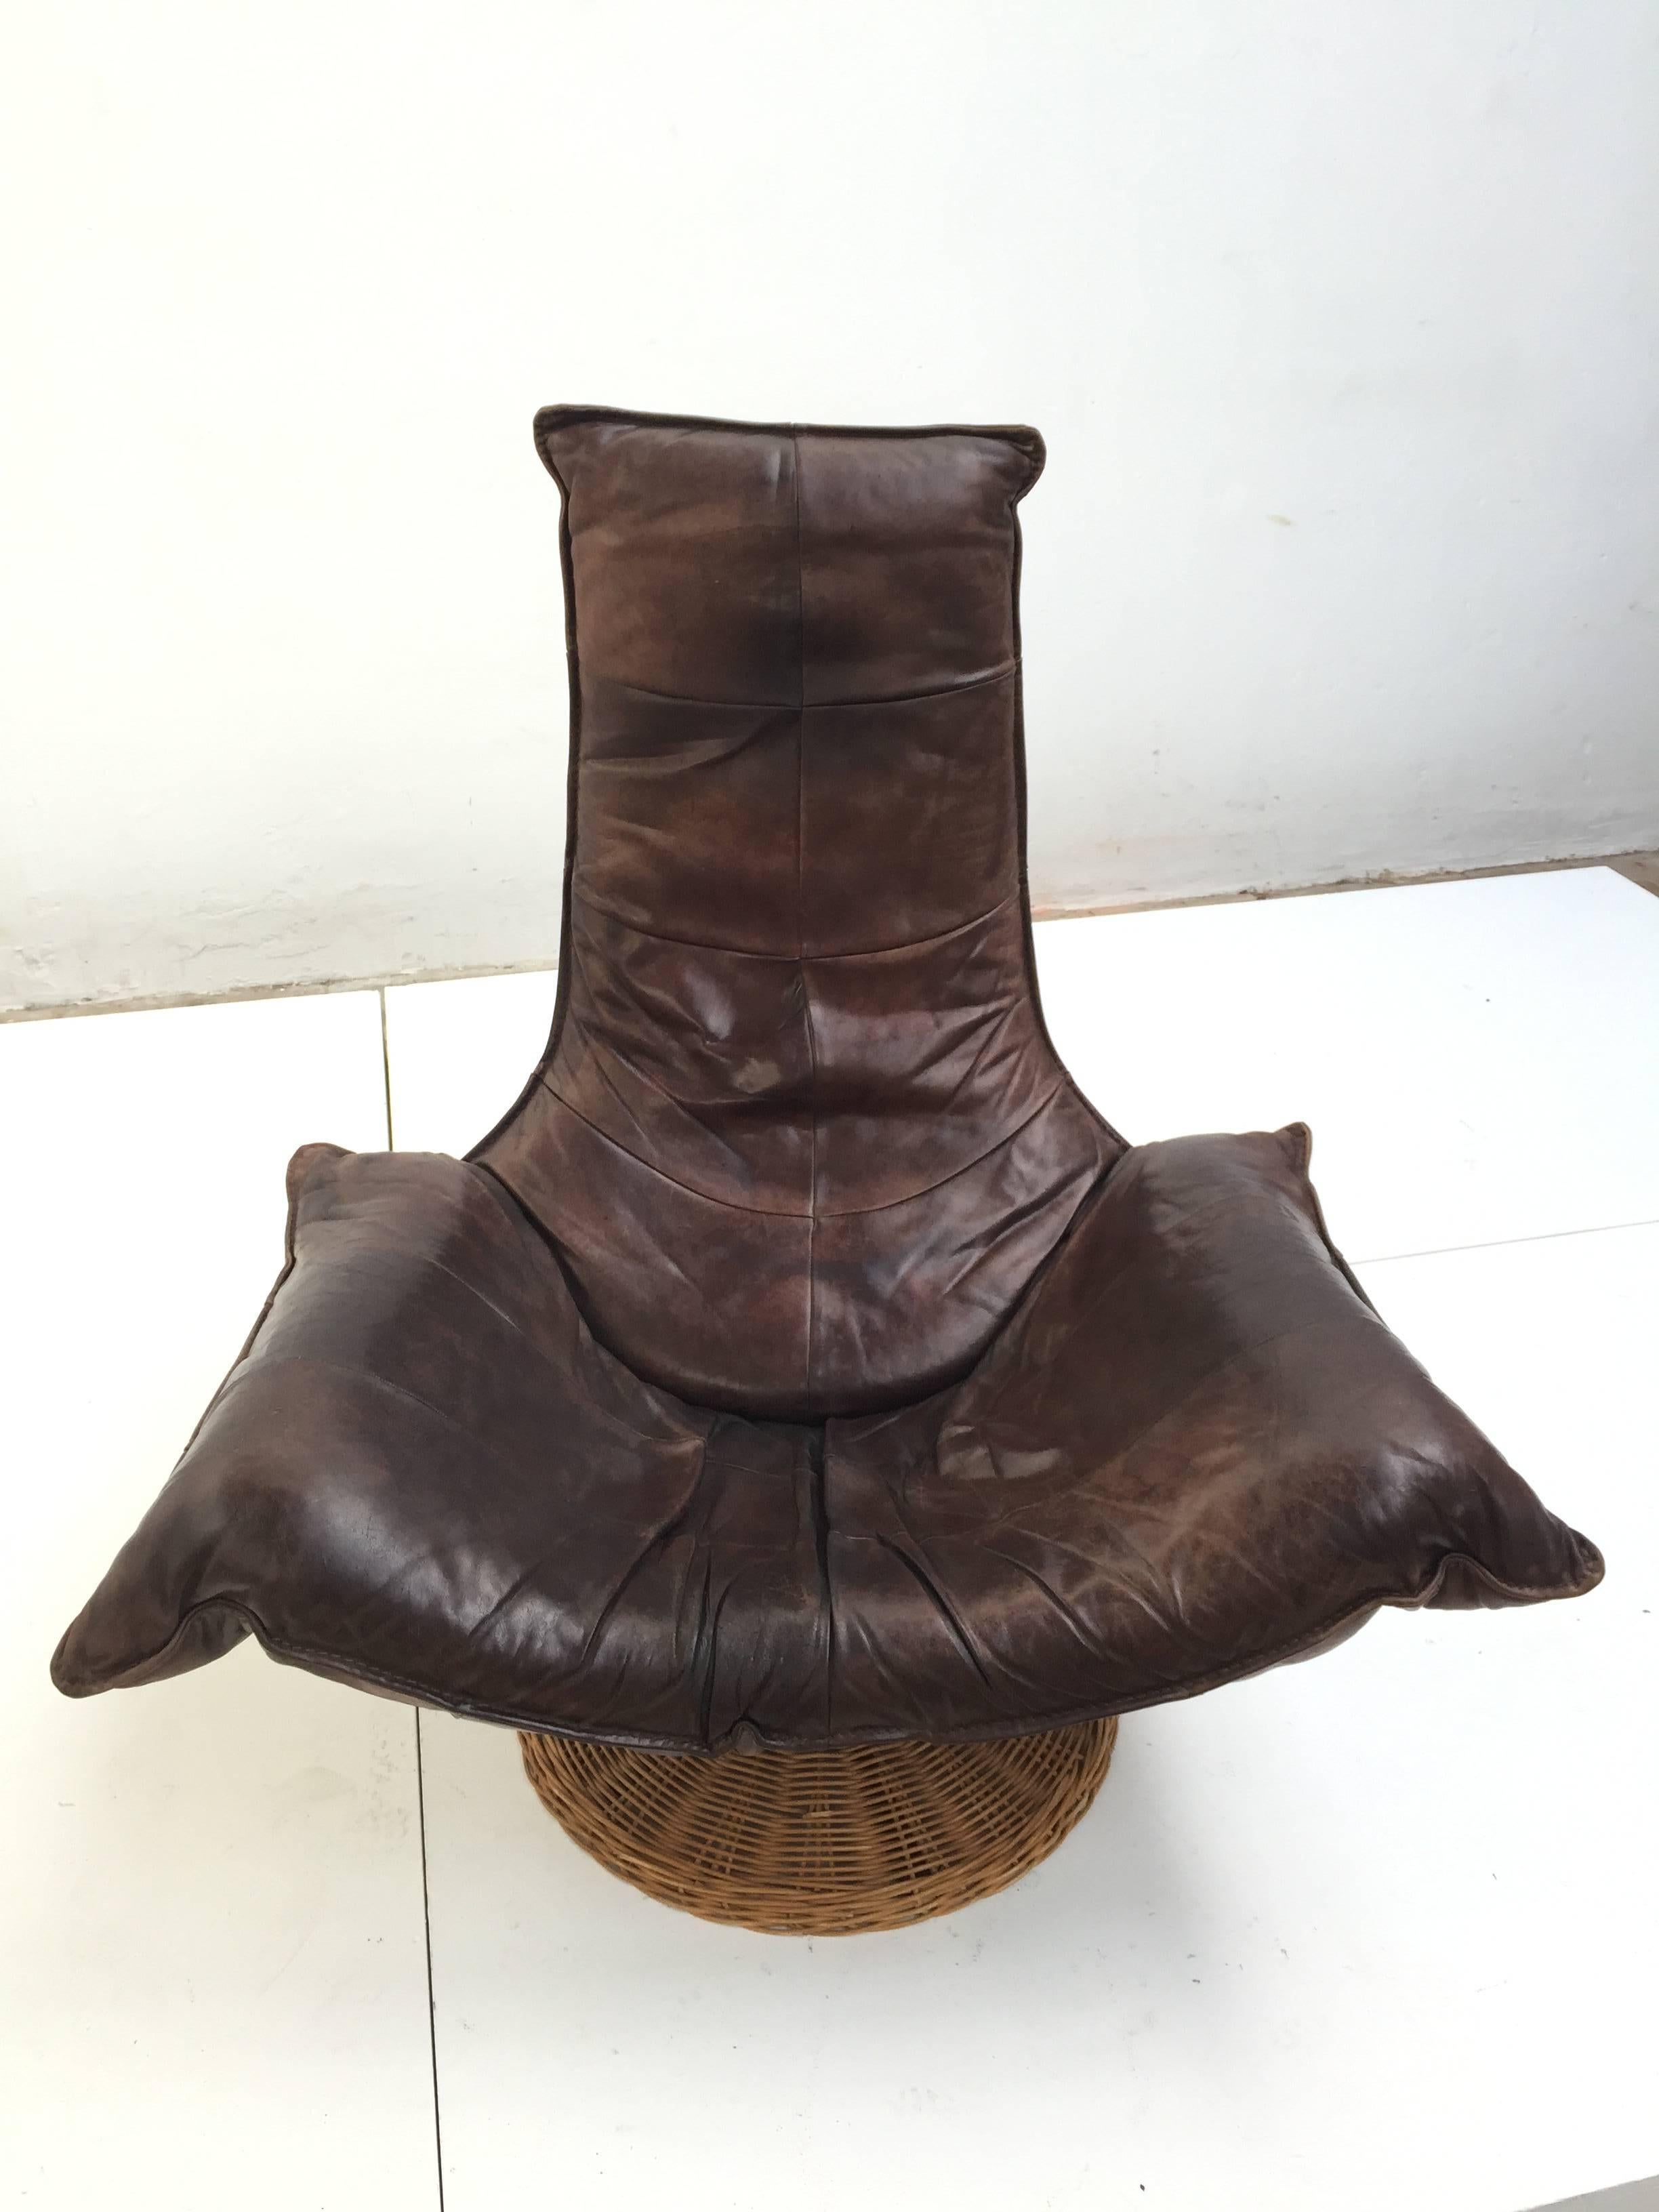 Fauteuil pivotant Monumental des années 1970 du designer néerlandais Gerard van den Berg pour Montis

Cette chaise est dotée d'un cuir robuste et épais, de couleur brun chocolat, qui a acquis une patine étonnante et caractéristique au fil des